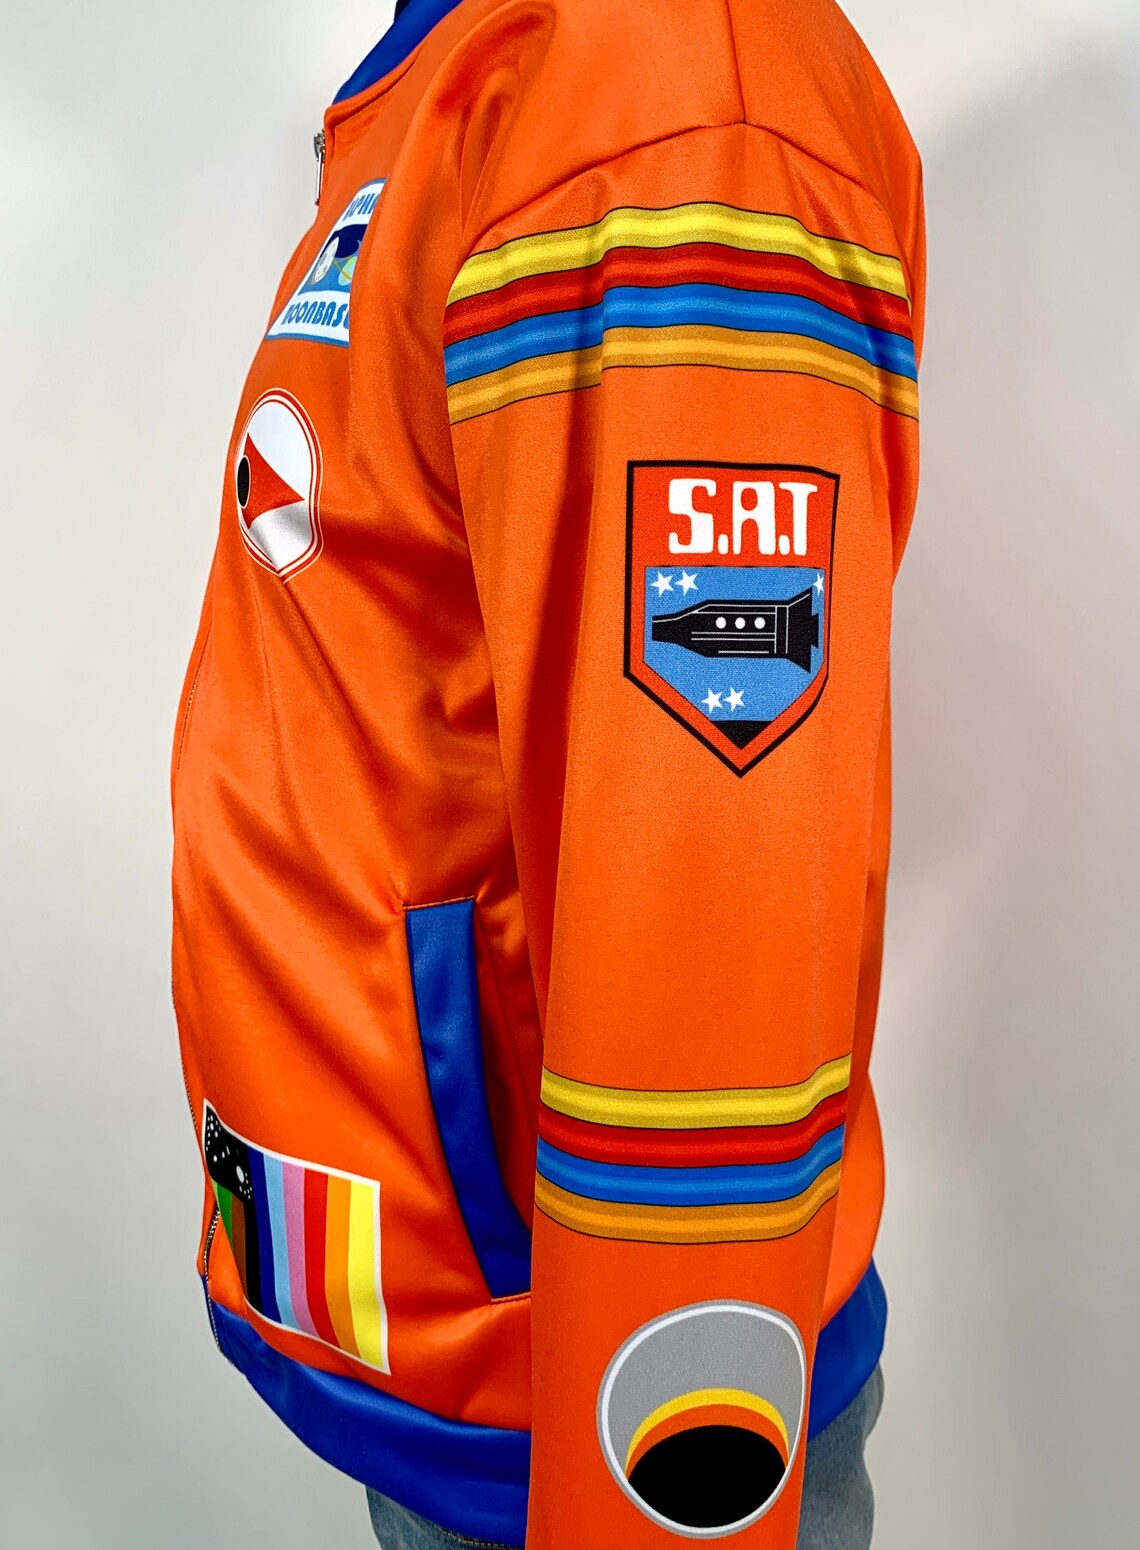 1999 Eagle Pilot Uniform Jacket Space